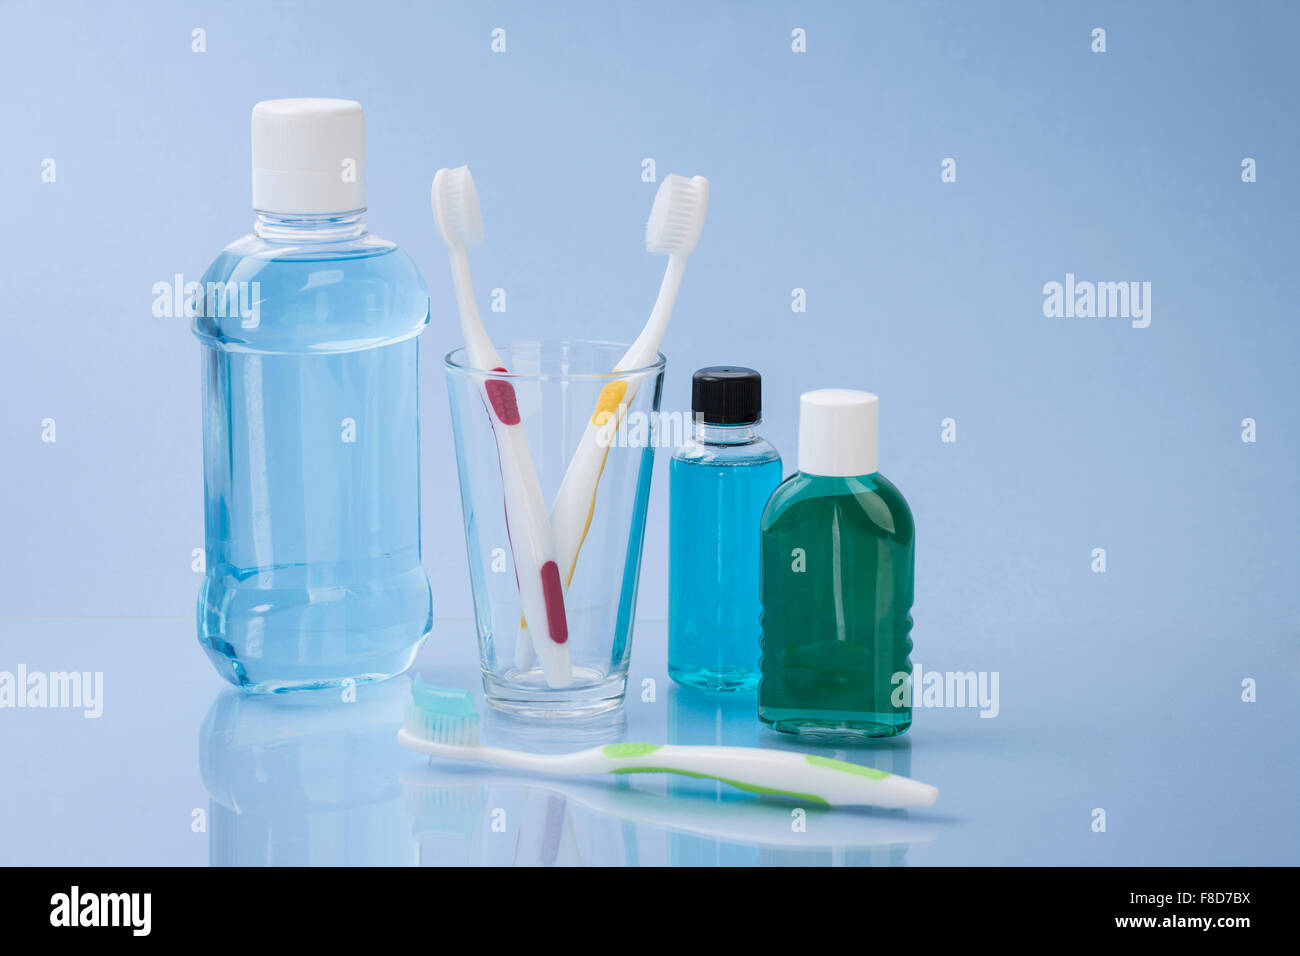 Les objets liés aux soins dentaires et d'hygiène dentaire sur fond bleu Banque D'Images